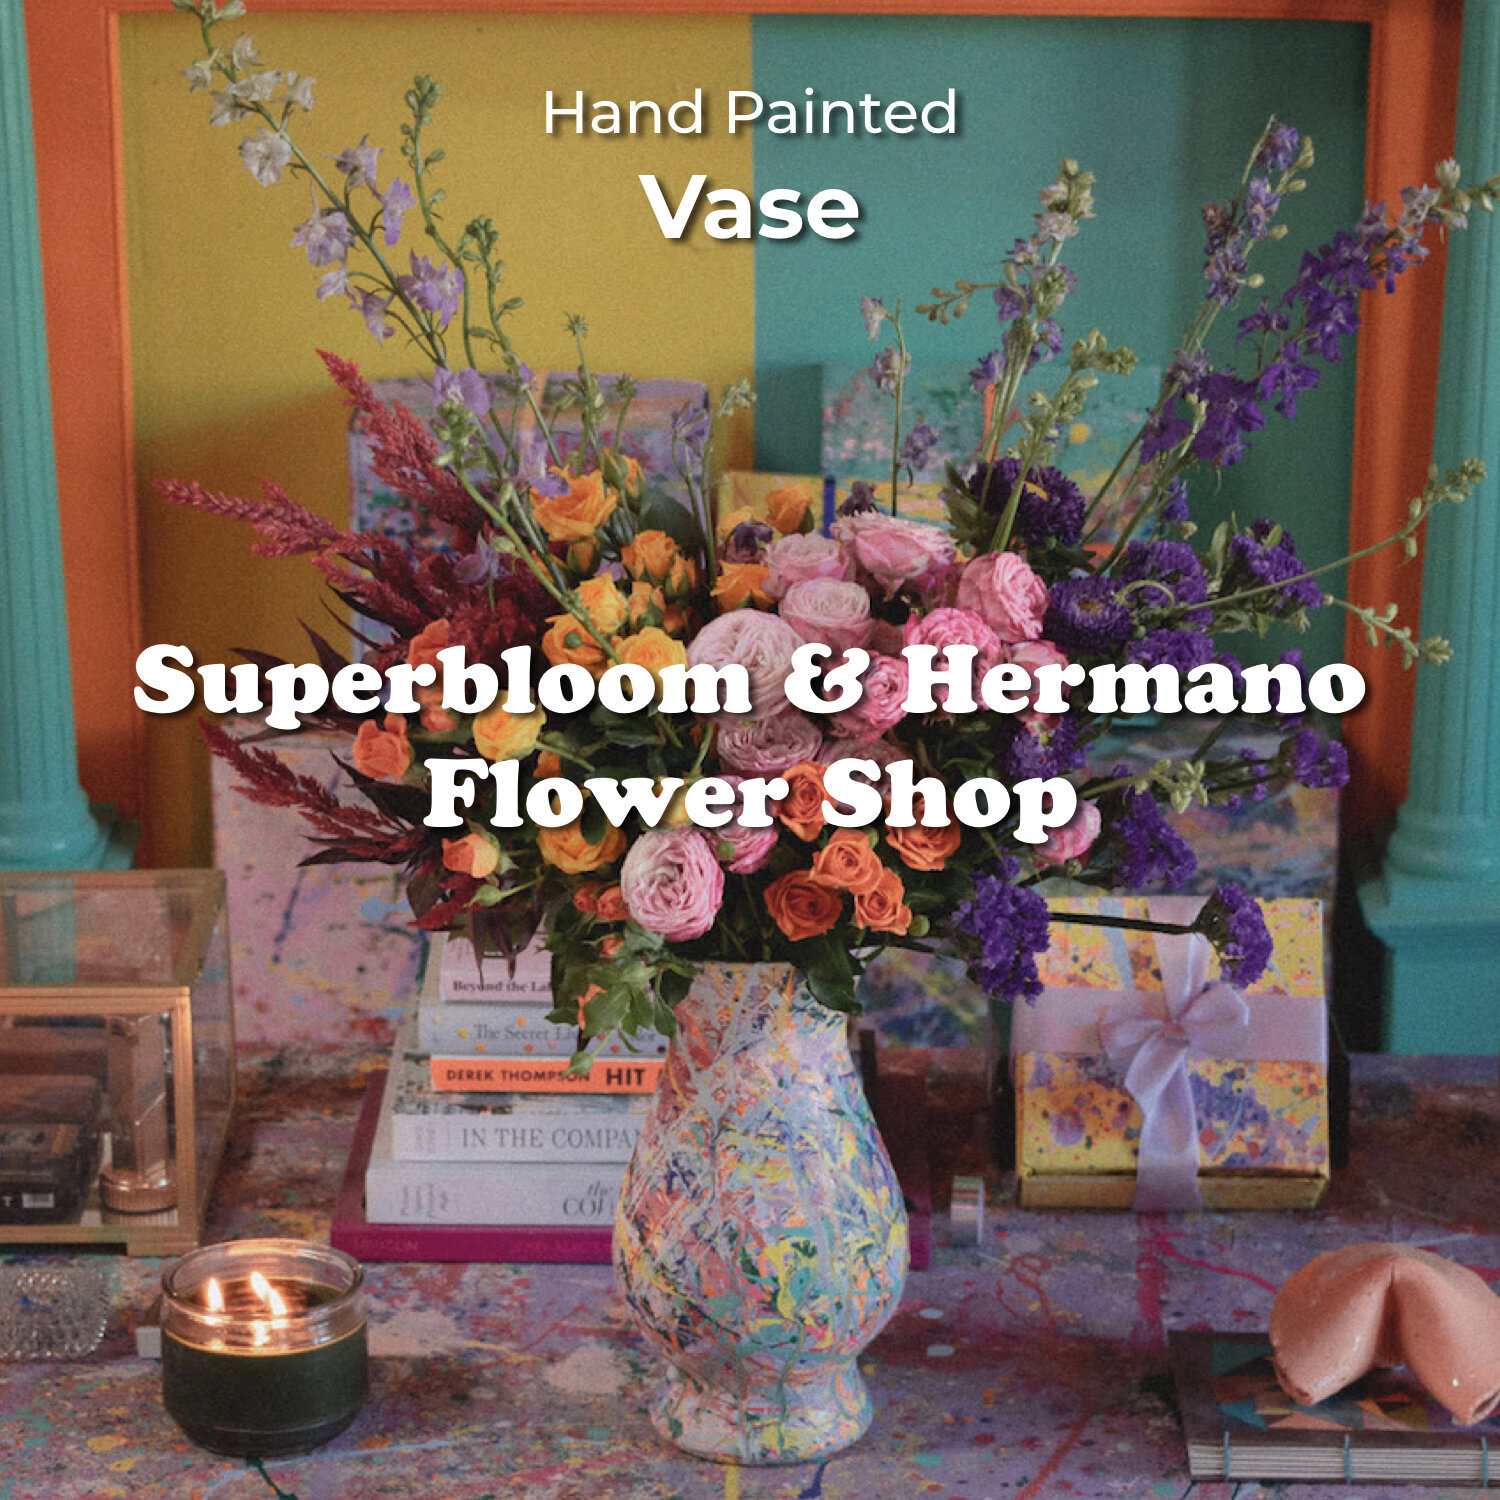 superbloom-vase-hermano-flower-shop-collaboration-palm-springs.jpeg